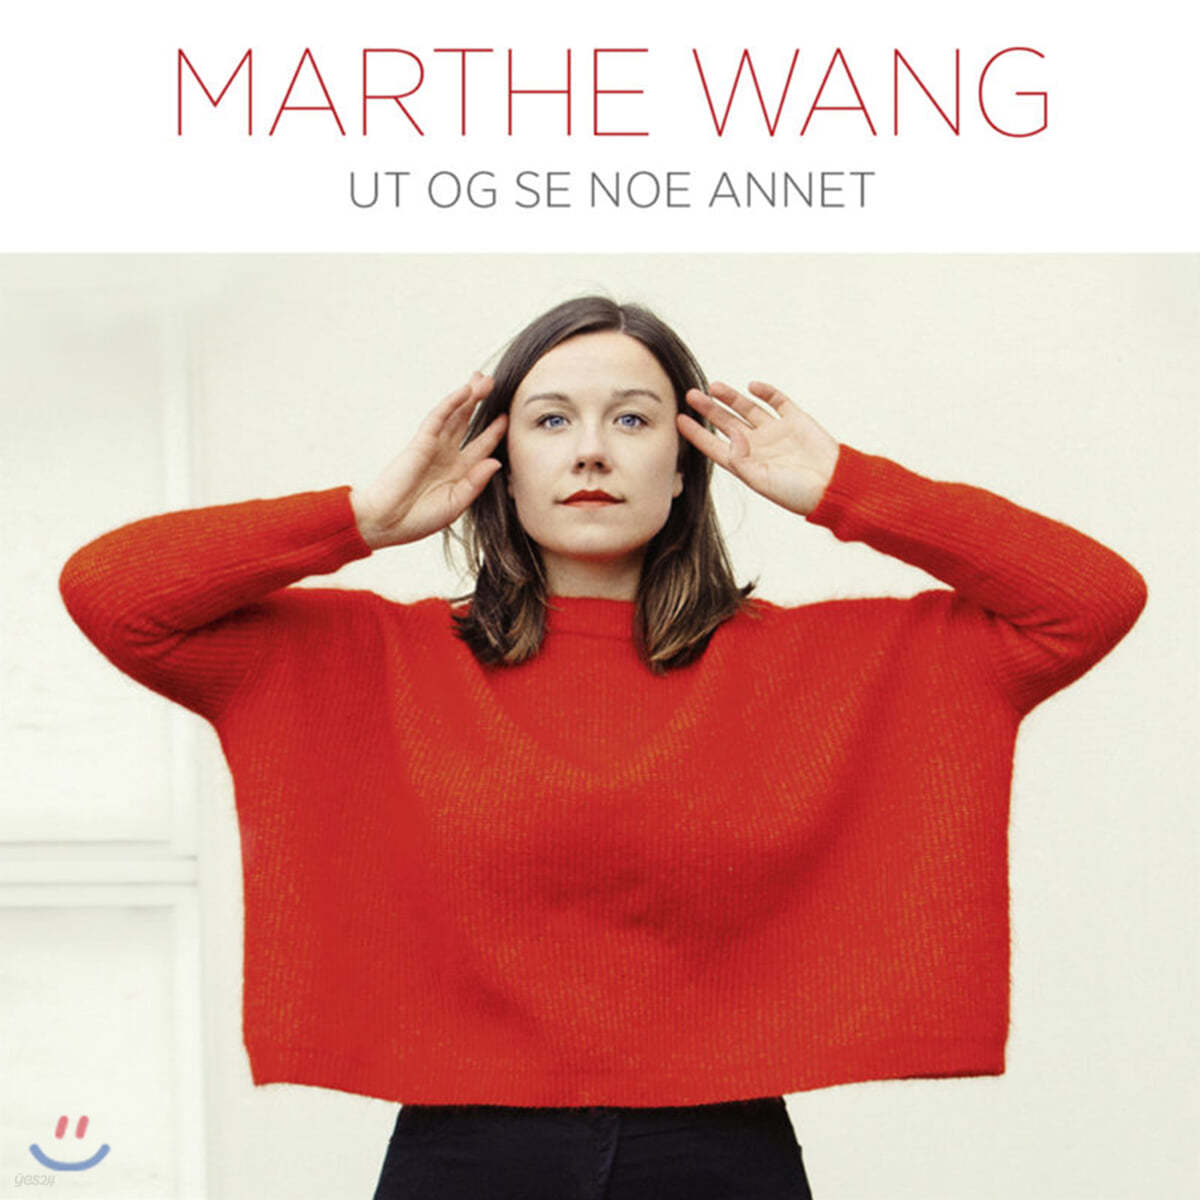 Marthe Want (마르테 방) - Ut Og Se Noe Annet [LP]